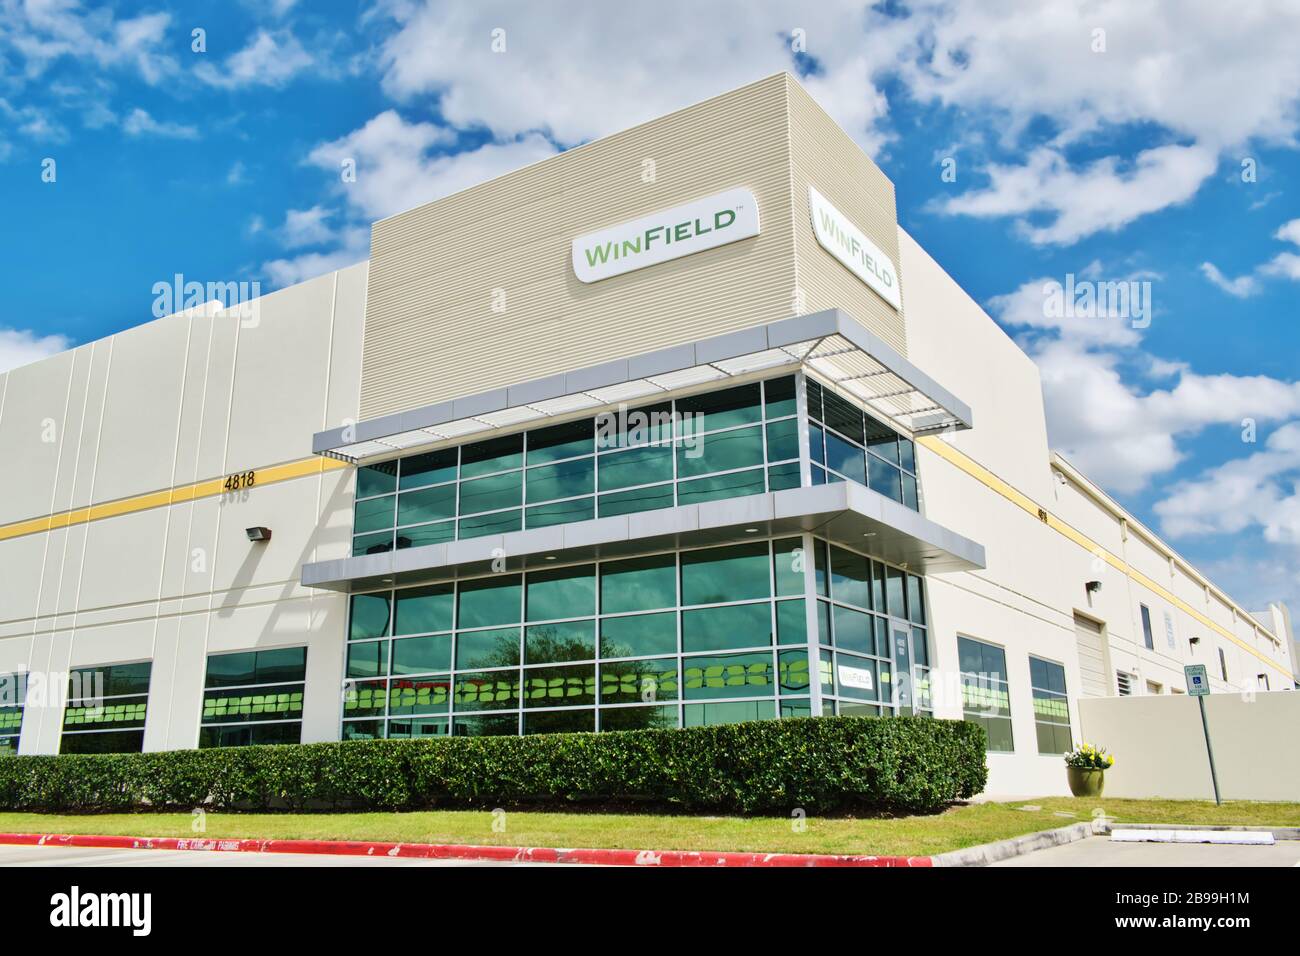 Extérieur de l'immeuble de bureaux d'entreprise Winfield sur Beltway 8 à Houston, Texas. Société de solutions agricoles qui a fusionné avec United Suppliers. Banque D'Images